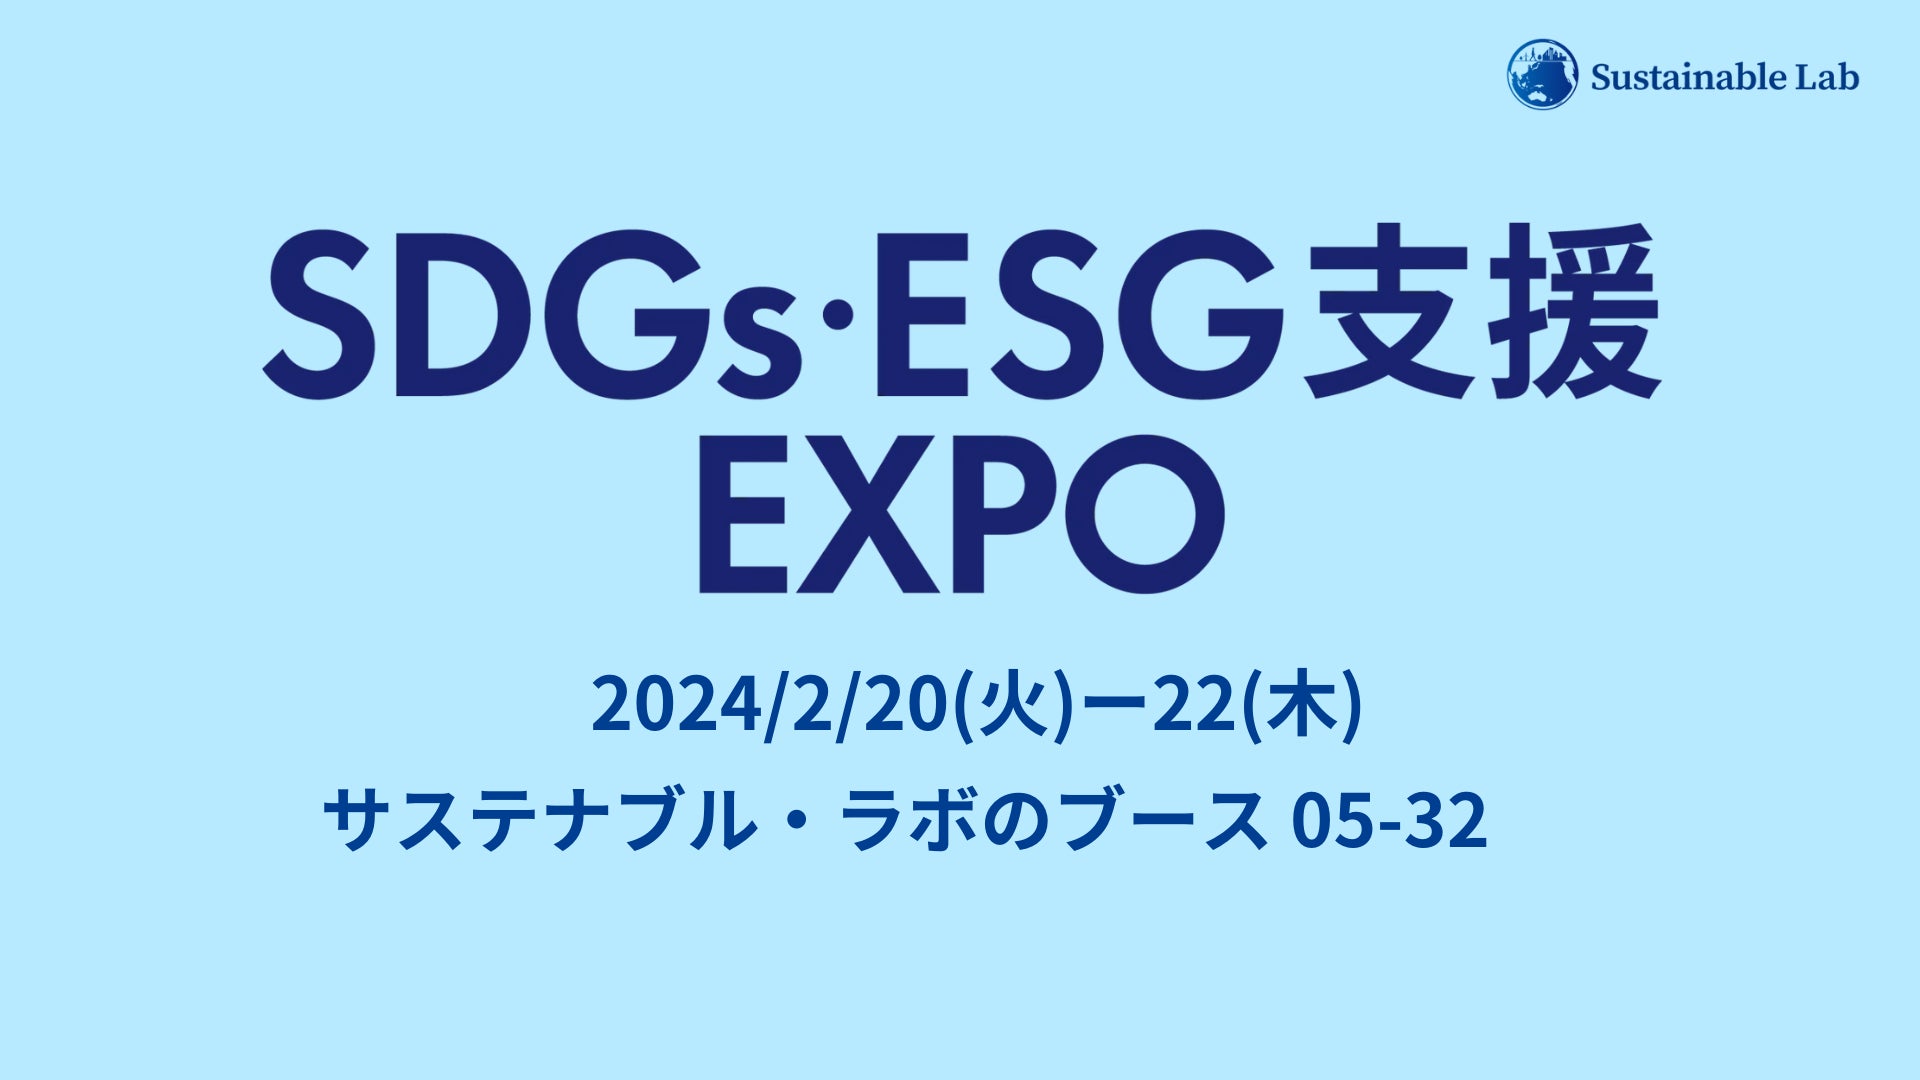 ＜いよいよ明日2/20(火)開幕!＞サステナブル・ラボ、日本最大級のSDGs・ESG支援 EXPO 2024に出展、キャンペーンを実施